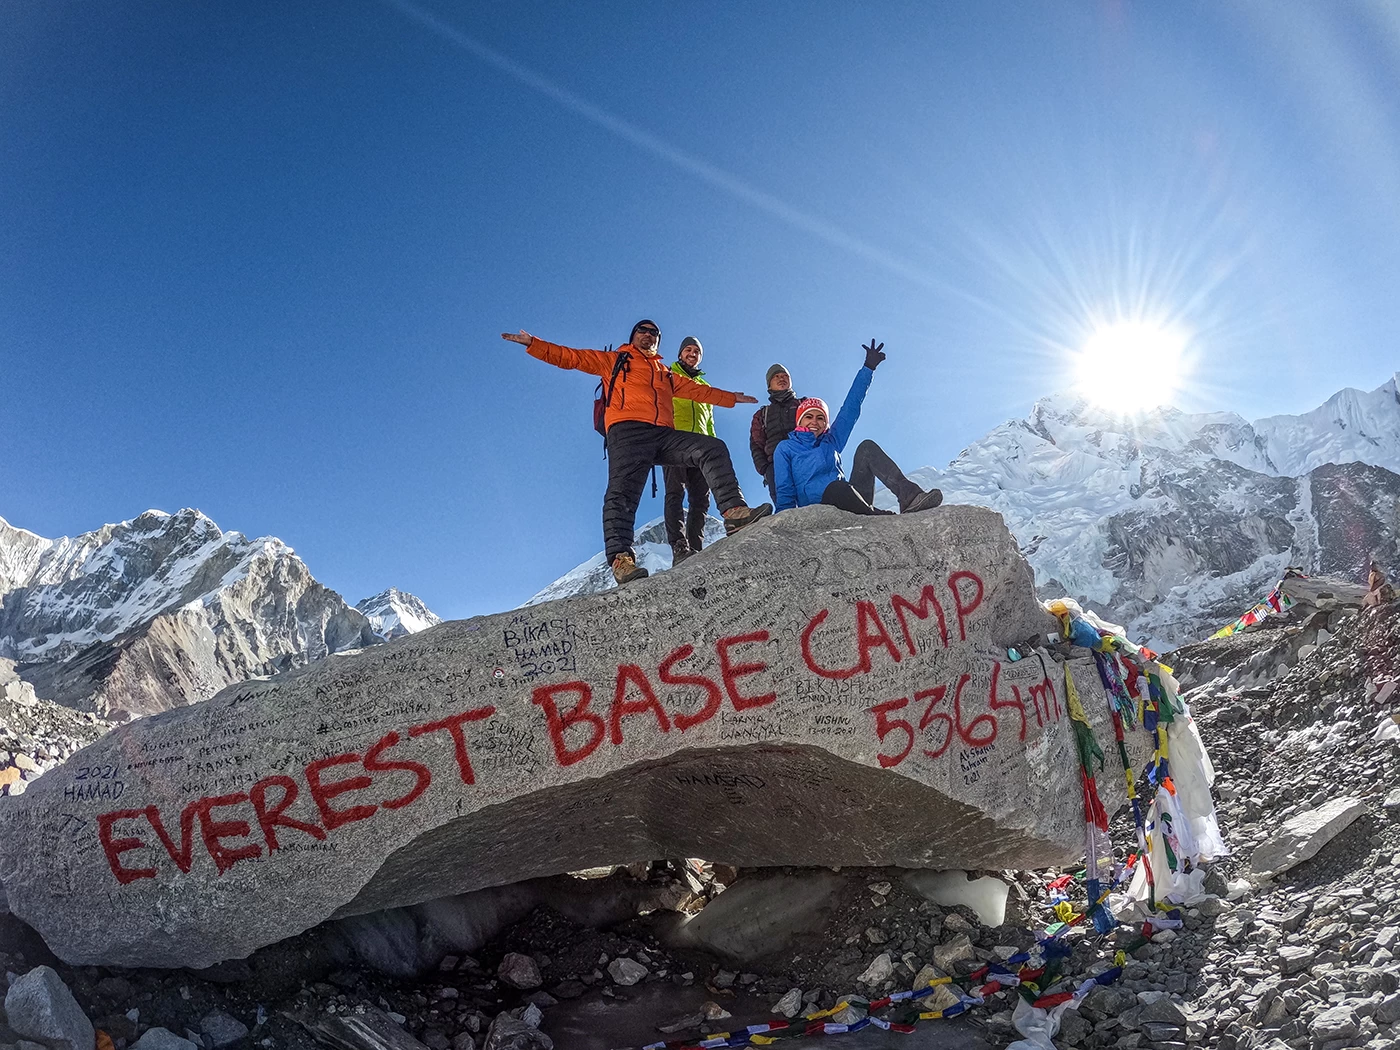  At Everest Base Camp 5,364m. 